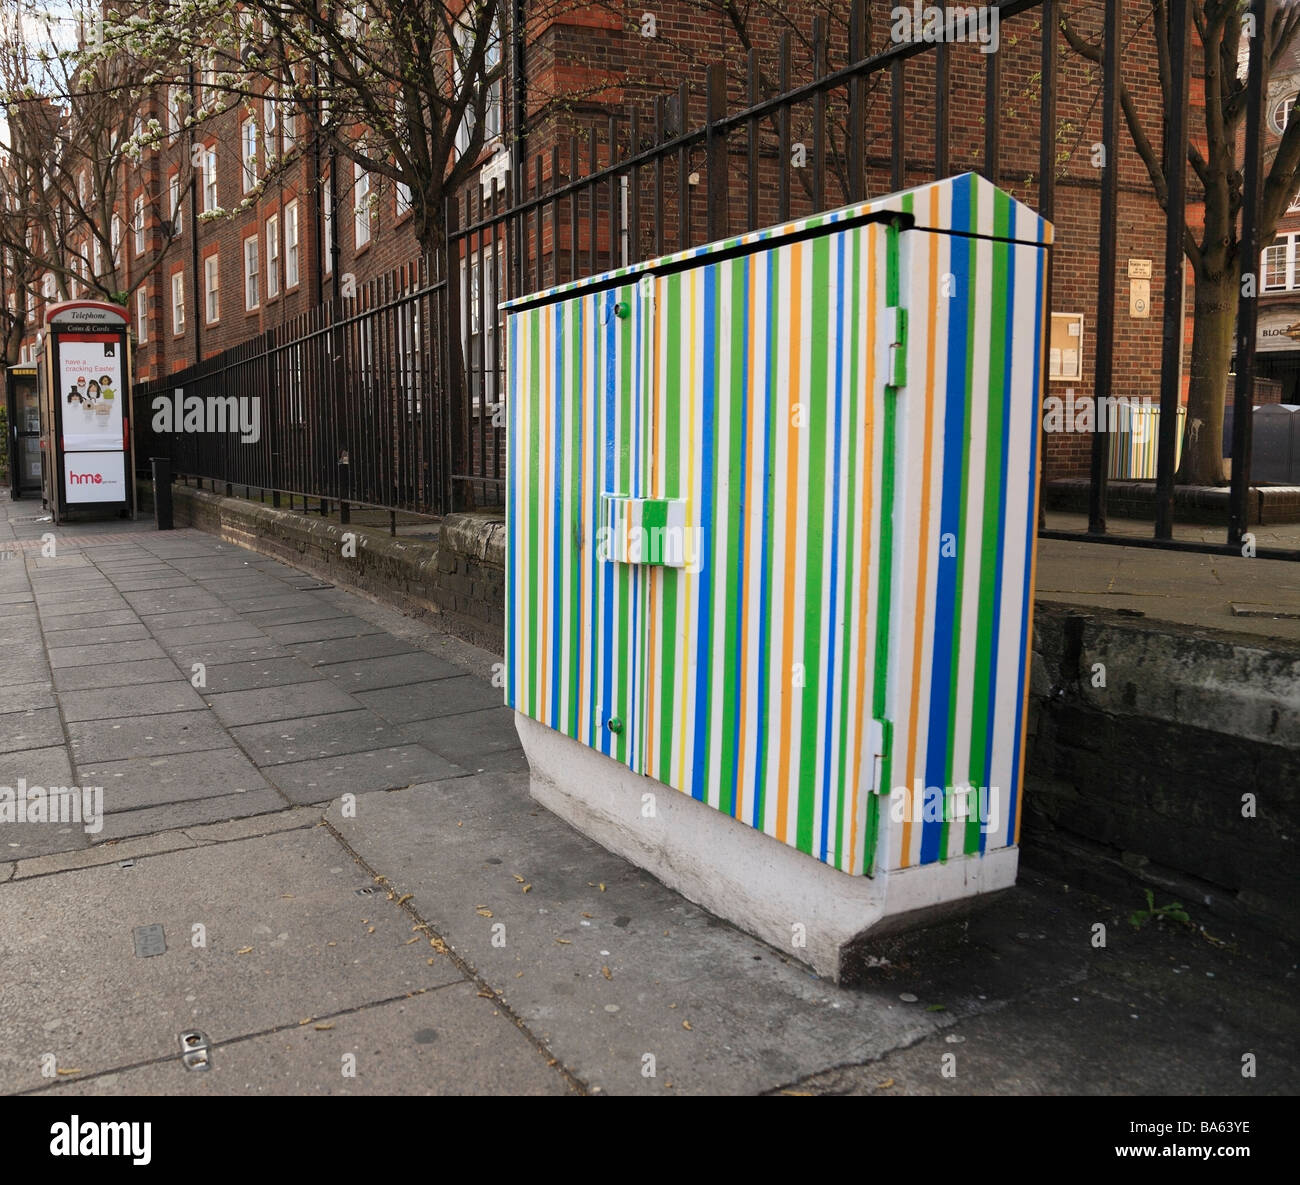 Peint de couleurs vives, mobilier urbain. 75015 West London, England, UK. Banque D'Images